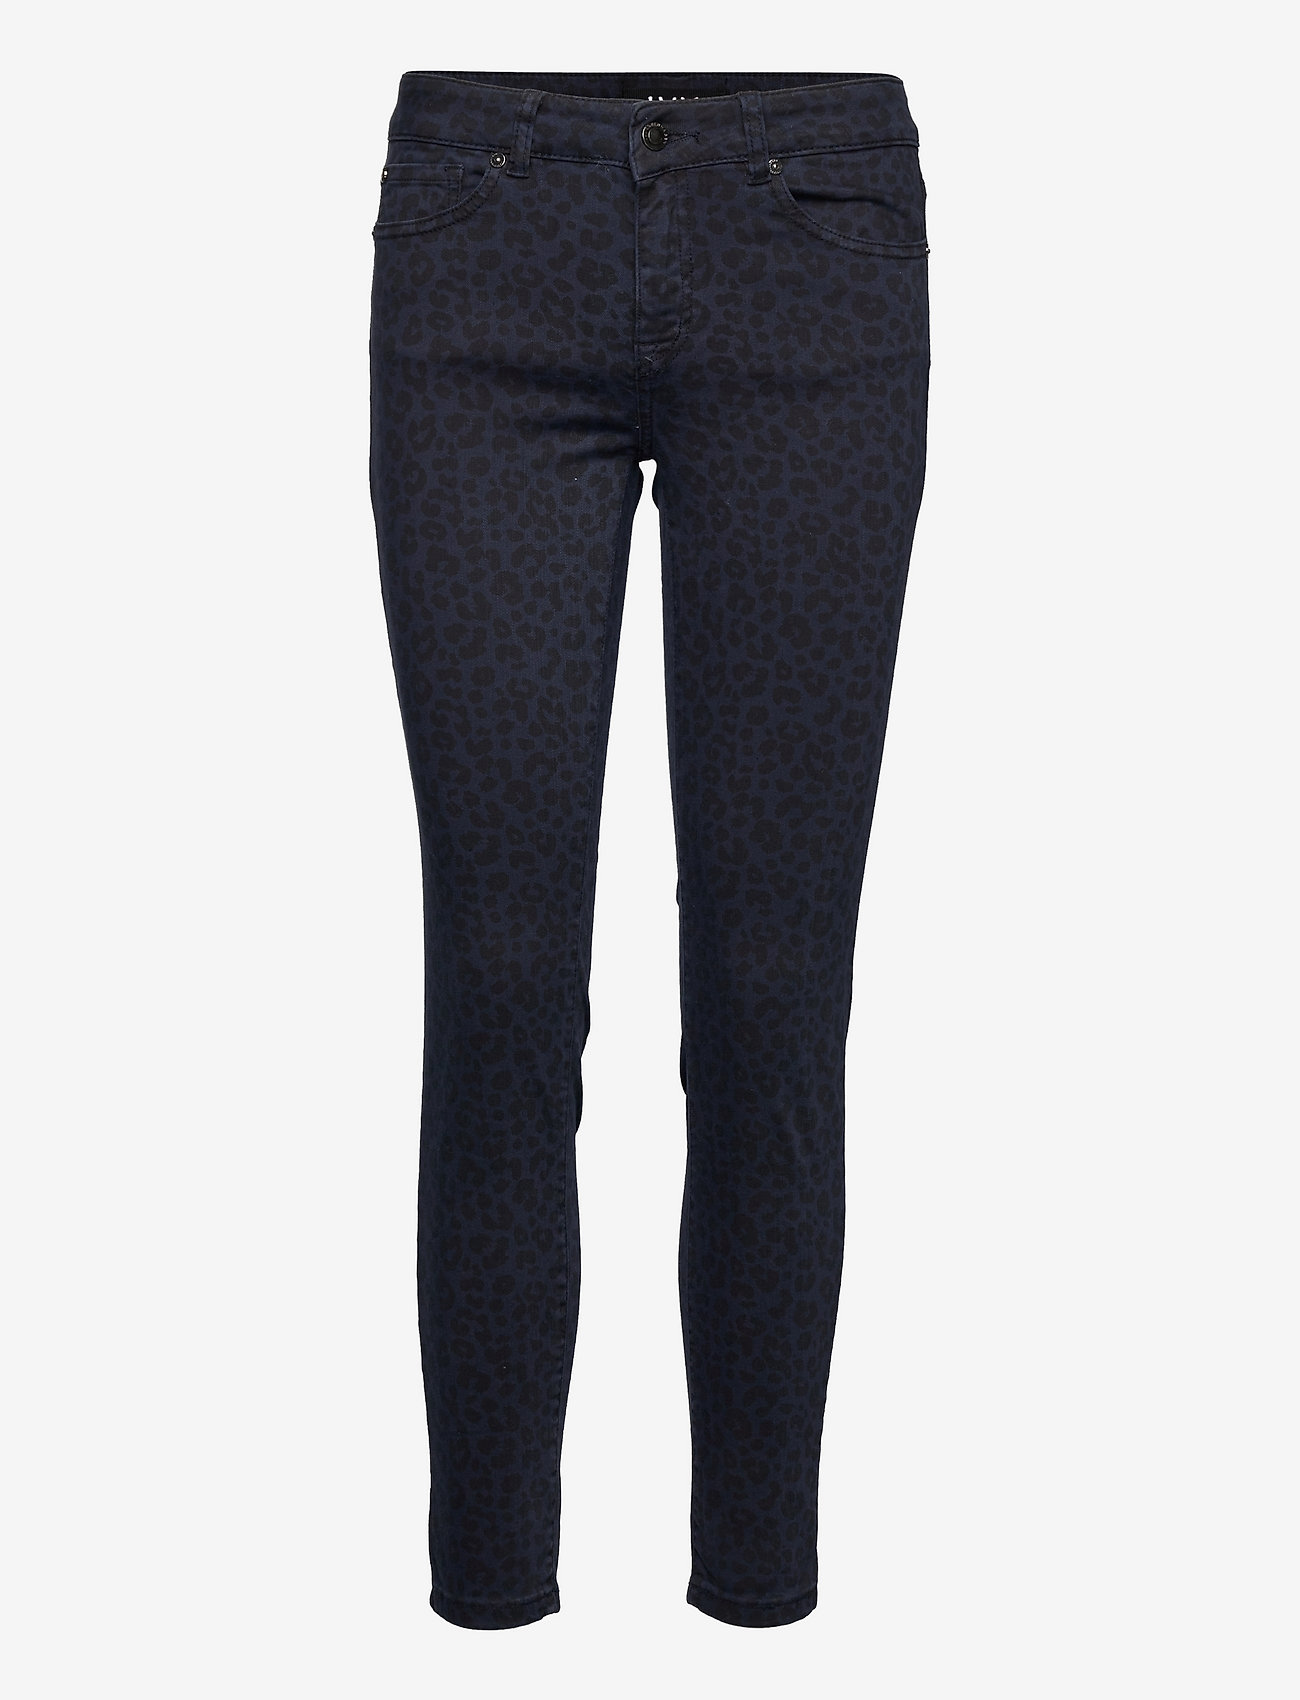 IVY Copenhagen - Daria jeans worn Leopard - skinny jeans - blue black - 0